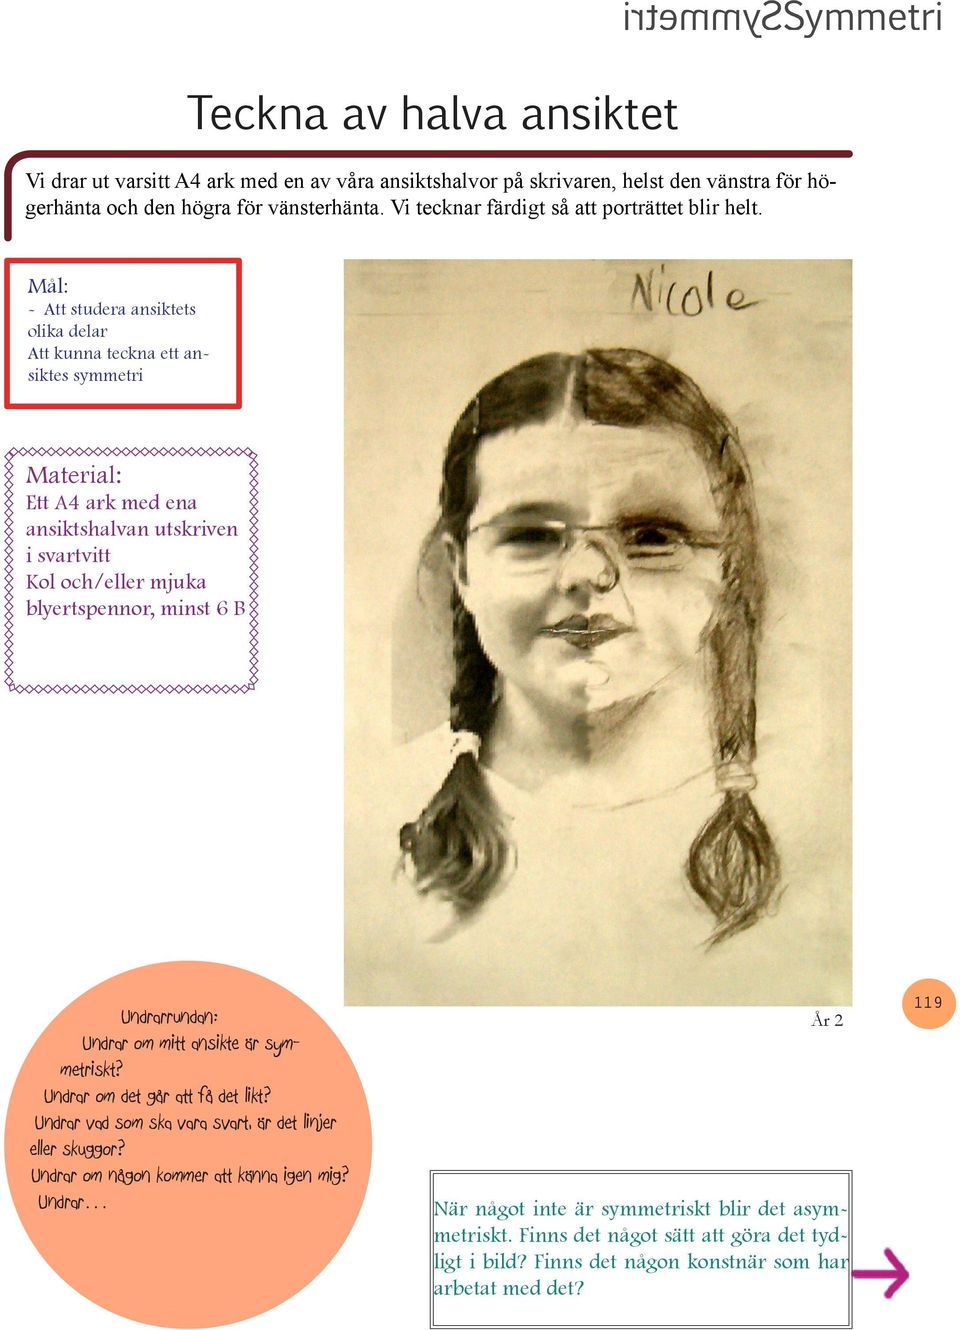 - Att studera ansiktets olika delar Att kunna teckna ett ansiktes symmetri Ett A4 ark med ena ansiktshalvan utskriven i svartvitt Kol och/eller mjuka blyertspennor, minst 6 B